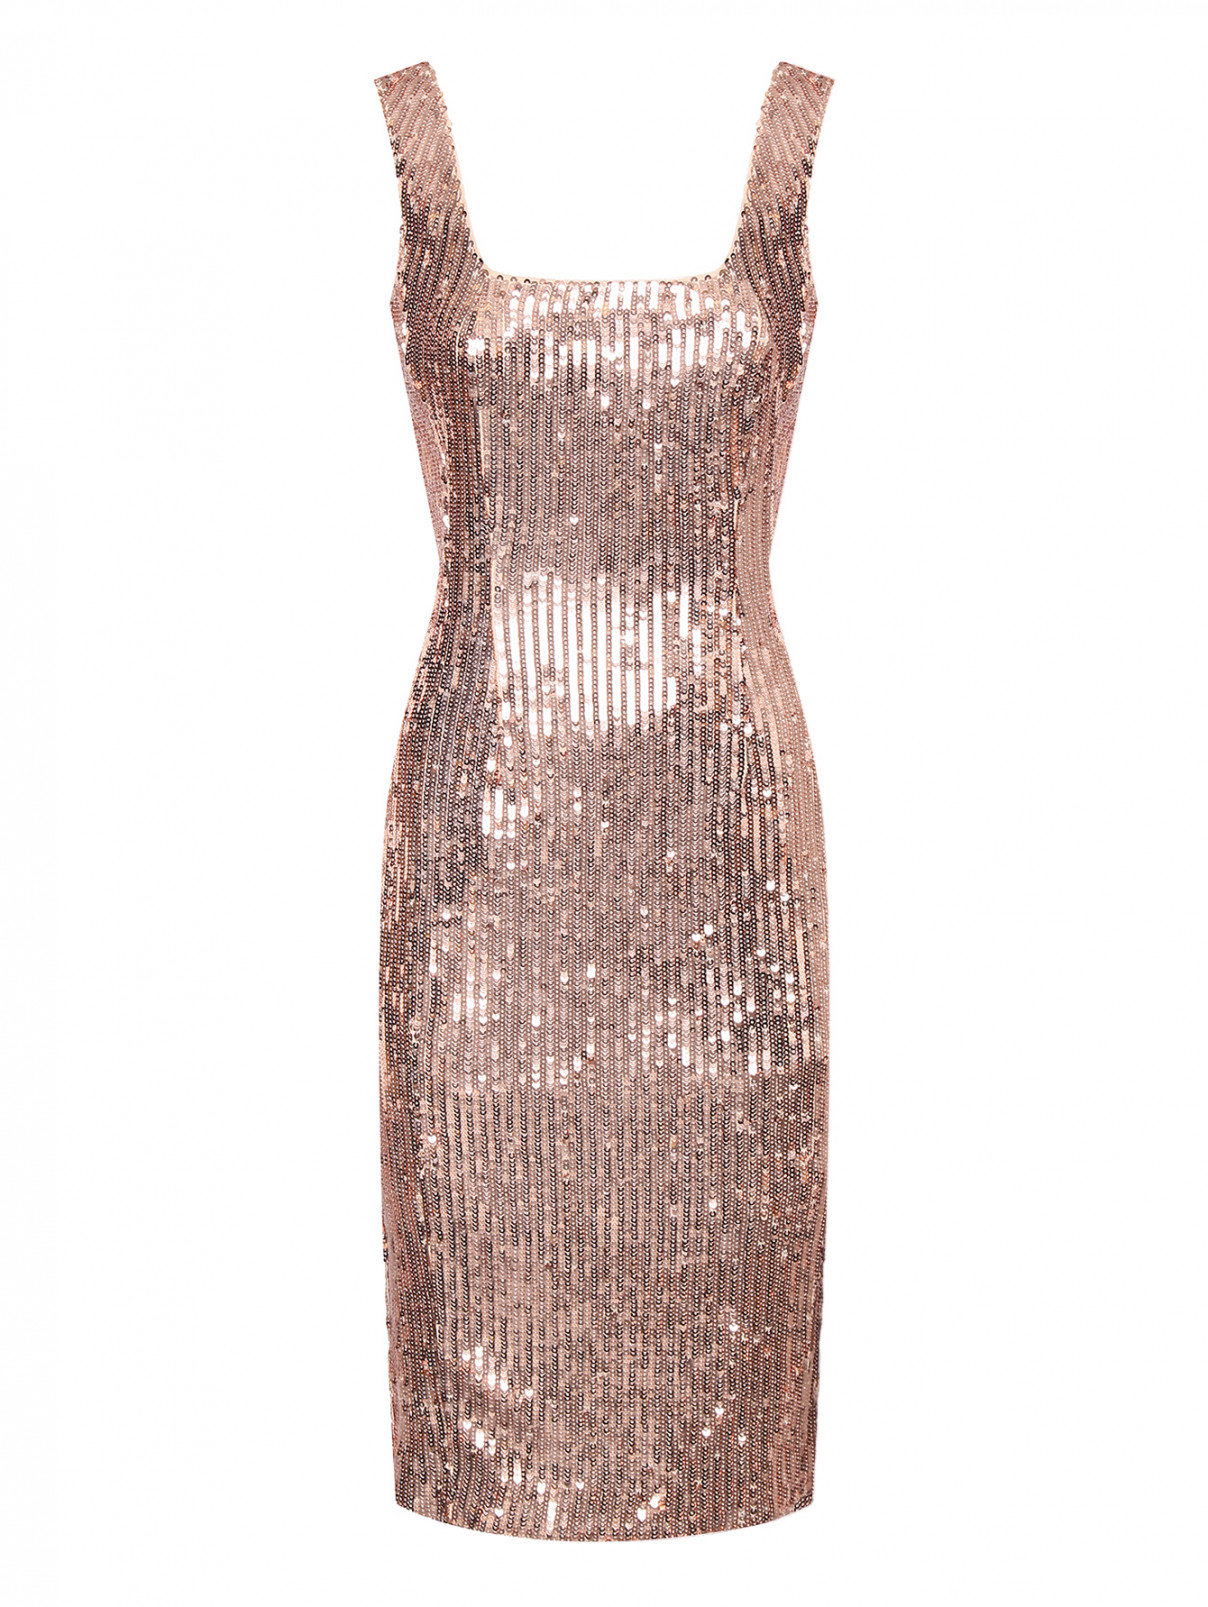 Платье декорированное пайетками Max Mara  –  Общий вид  – Цвет:  Розовый